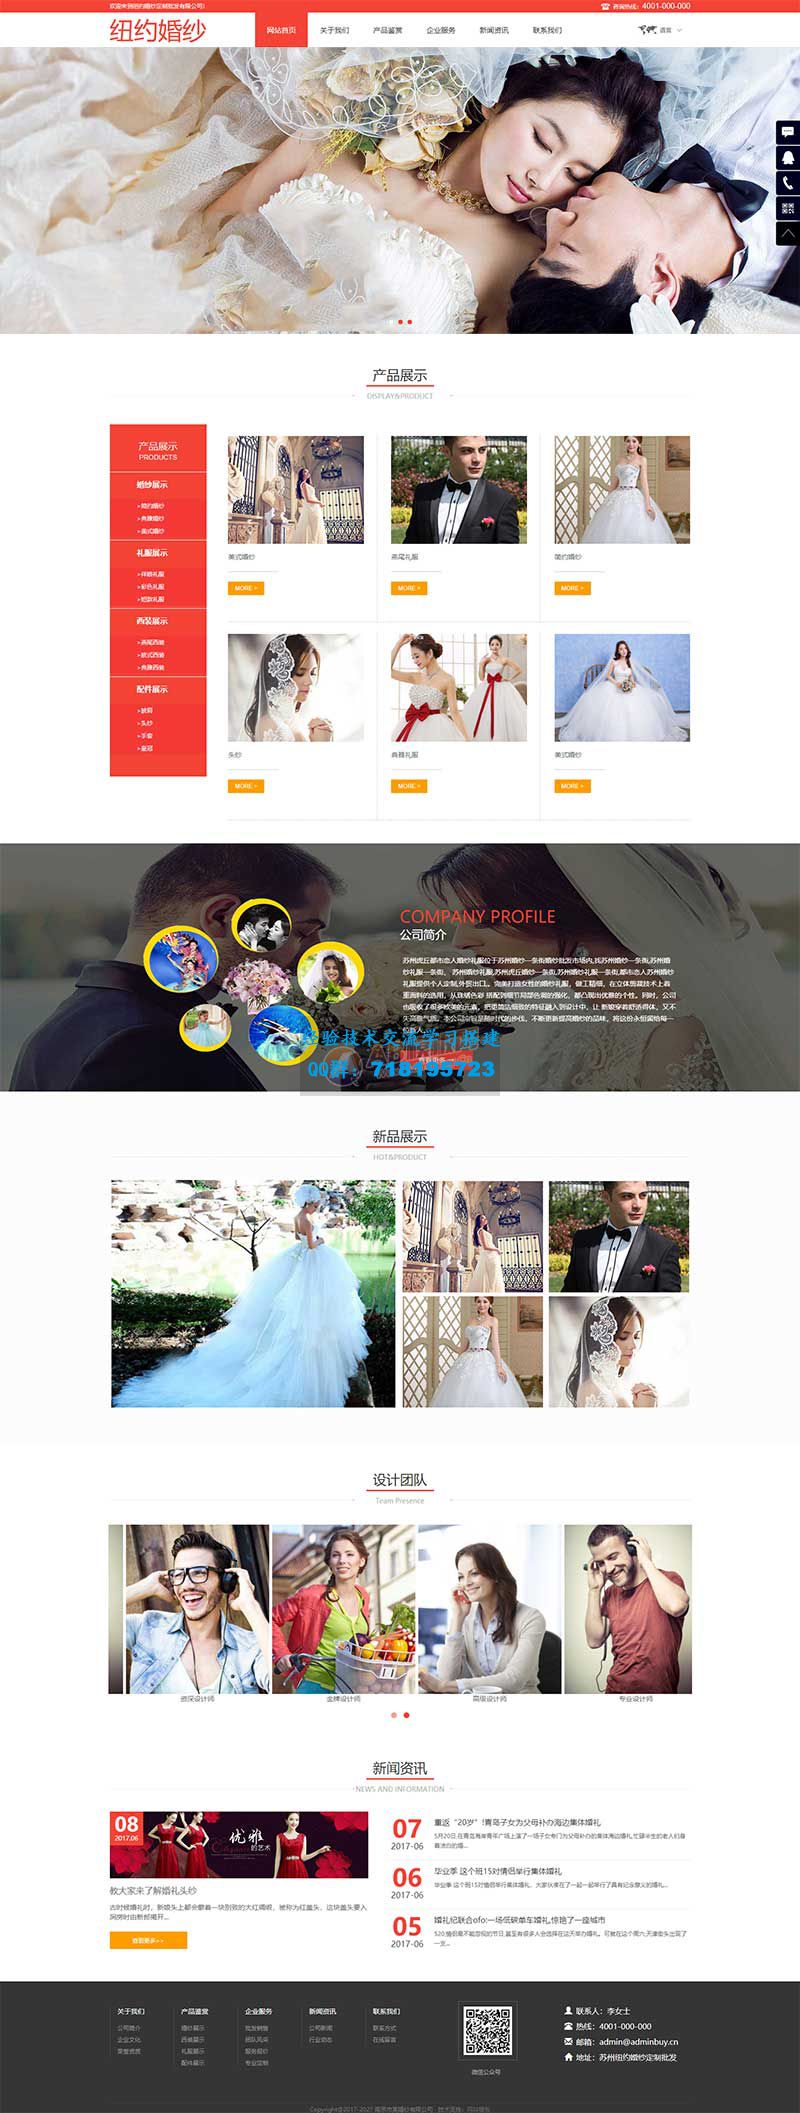     红色的婚纱摄影公司网站响应式静态html模板
